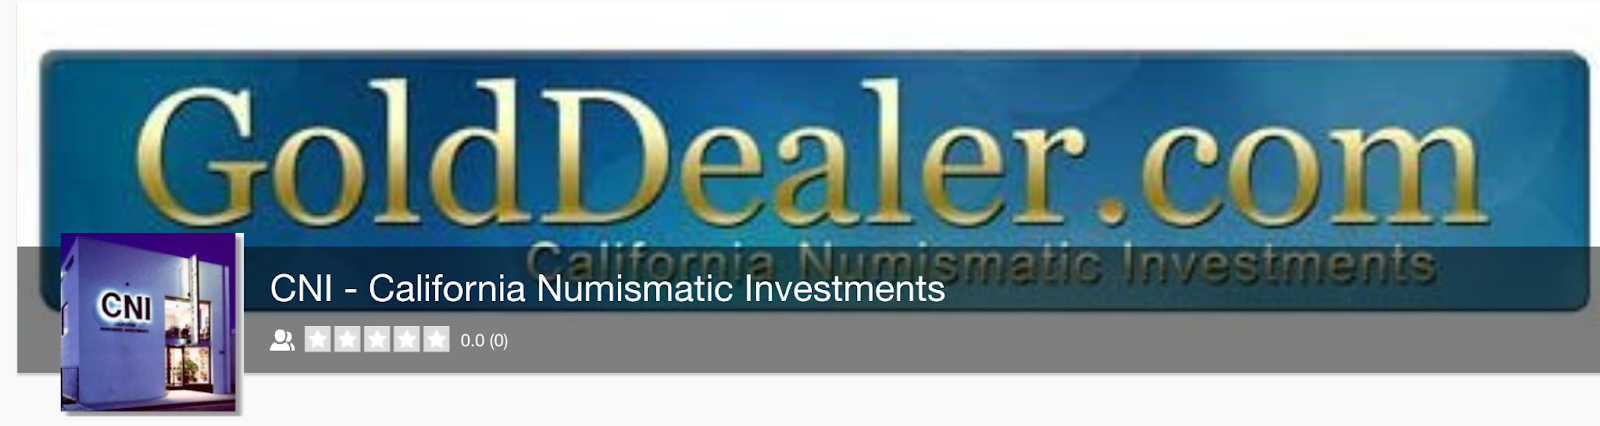 California Numismatic Investments Inc logo